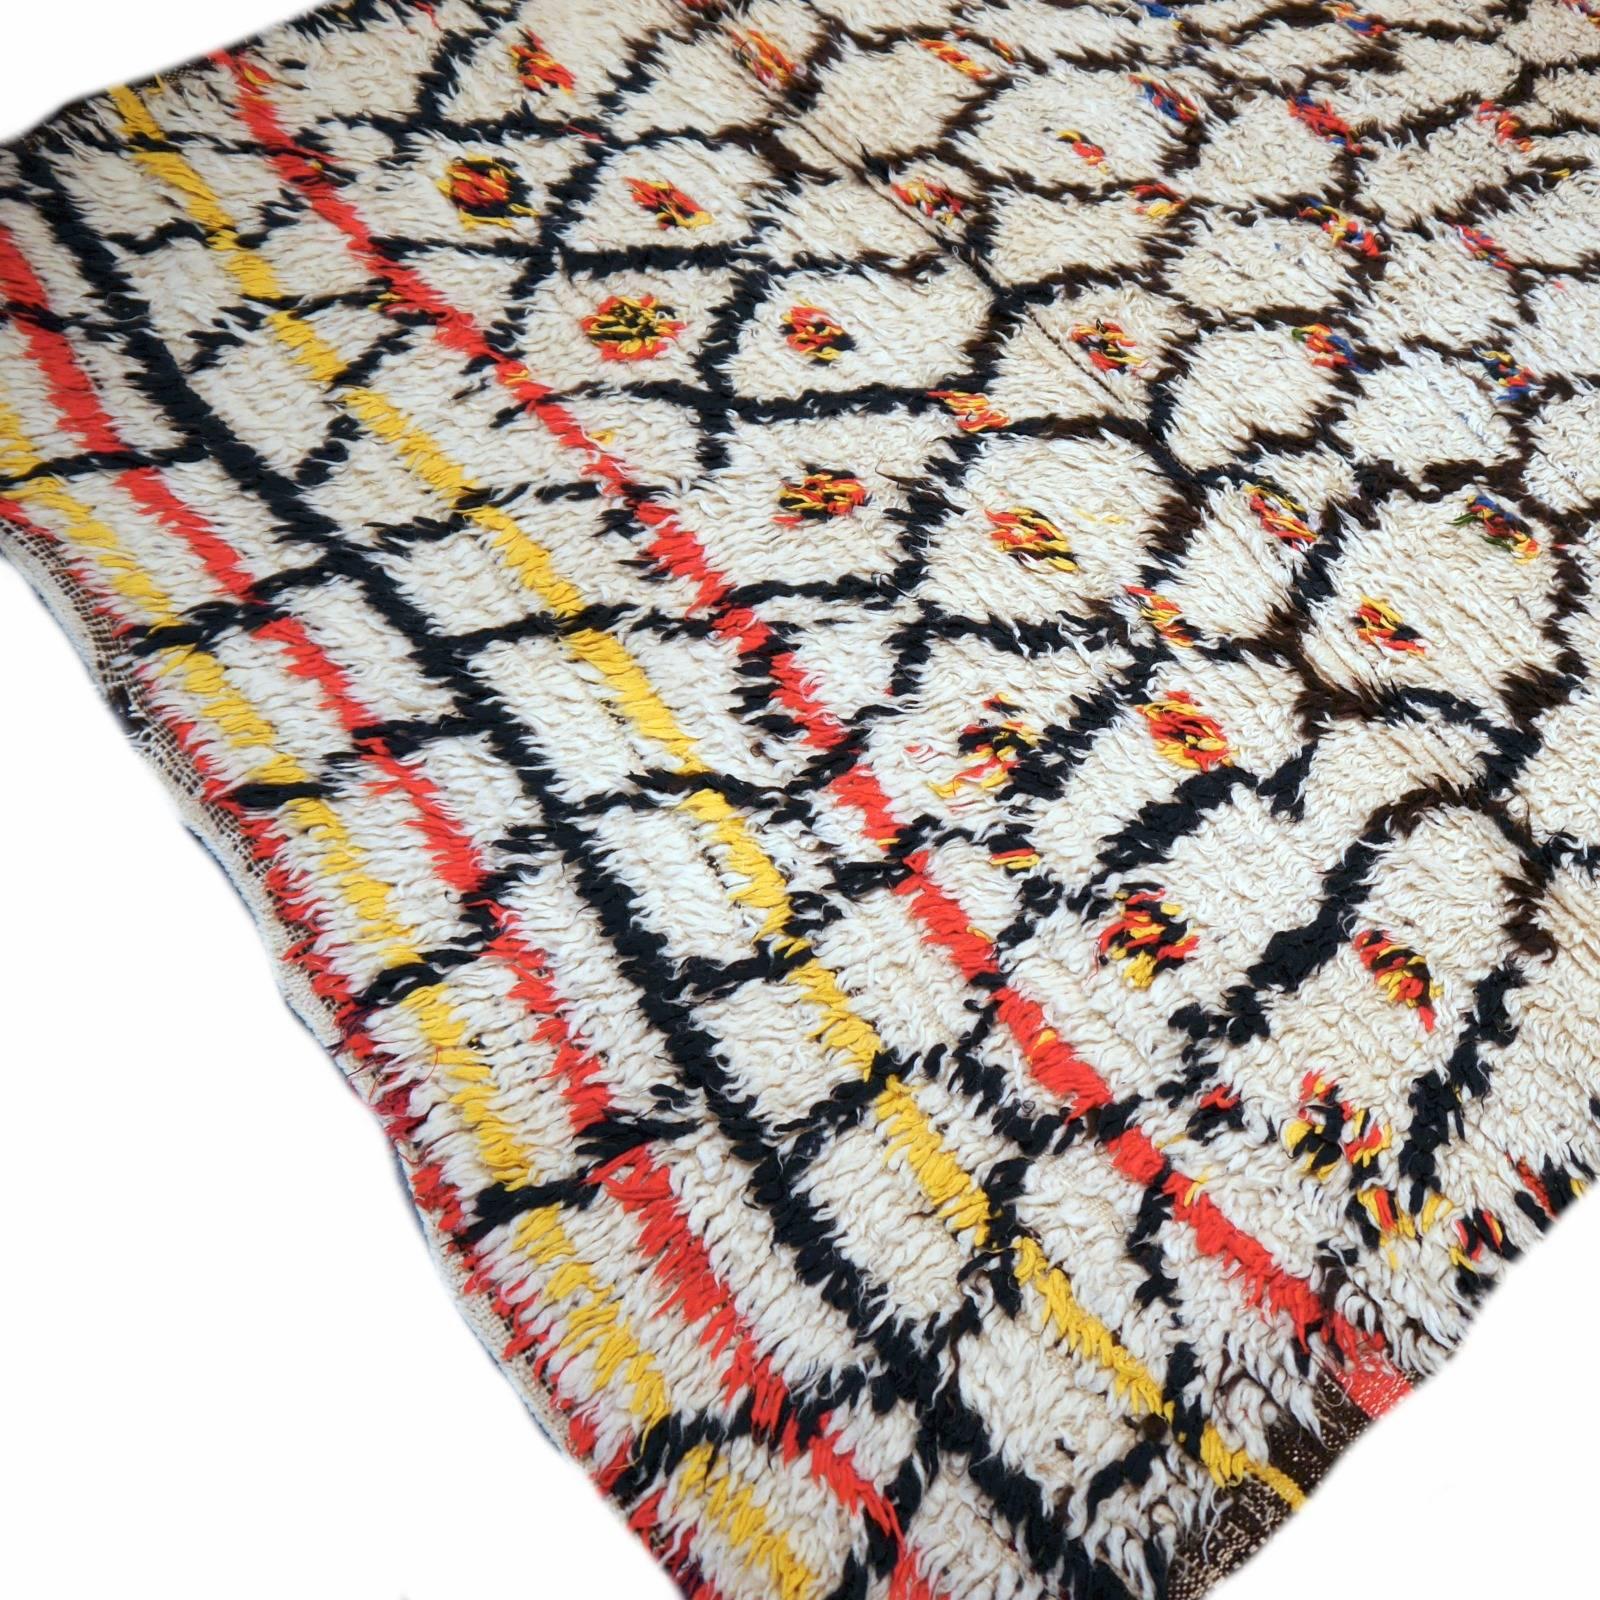 Très beau tapis tribal marocain vintage. Noué à la main par des femmes tribales dans les montagnes marocaines. Des couleurs et un design joyeux.

La collection Djoharian Design est située en Allemagne, tous nos tapis sont expédiés depuis ce pays.